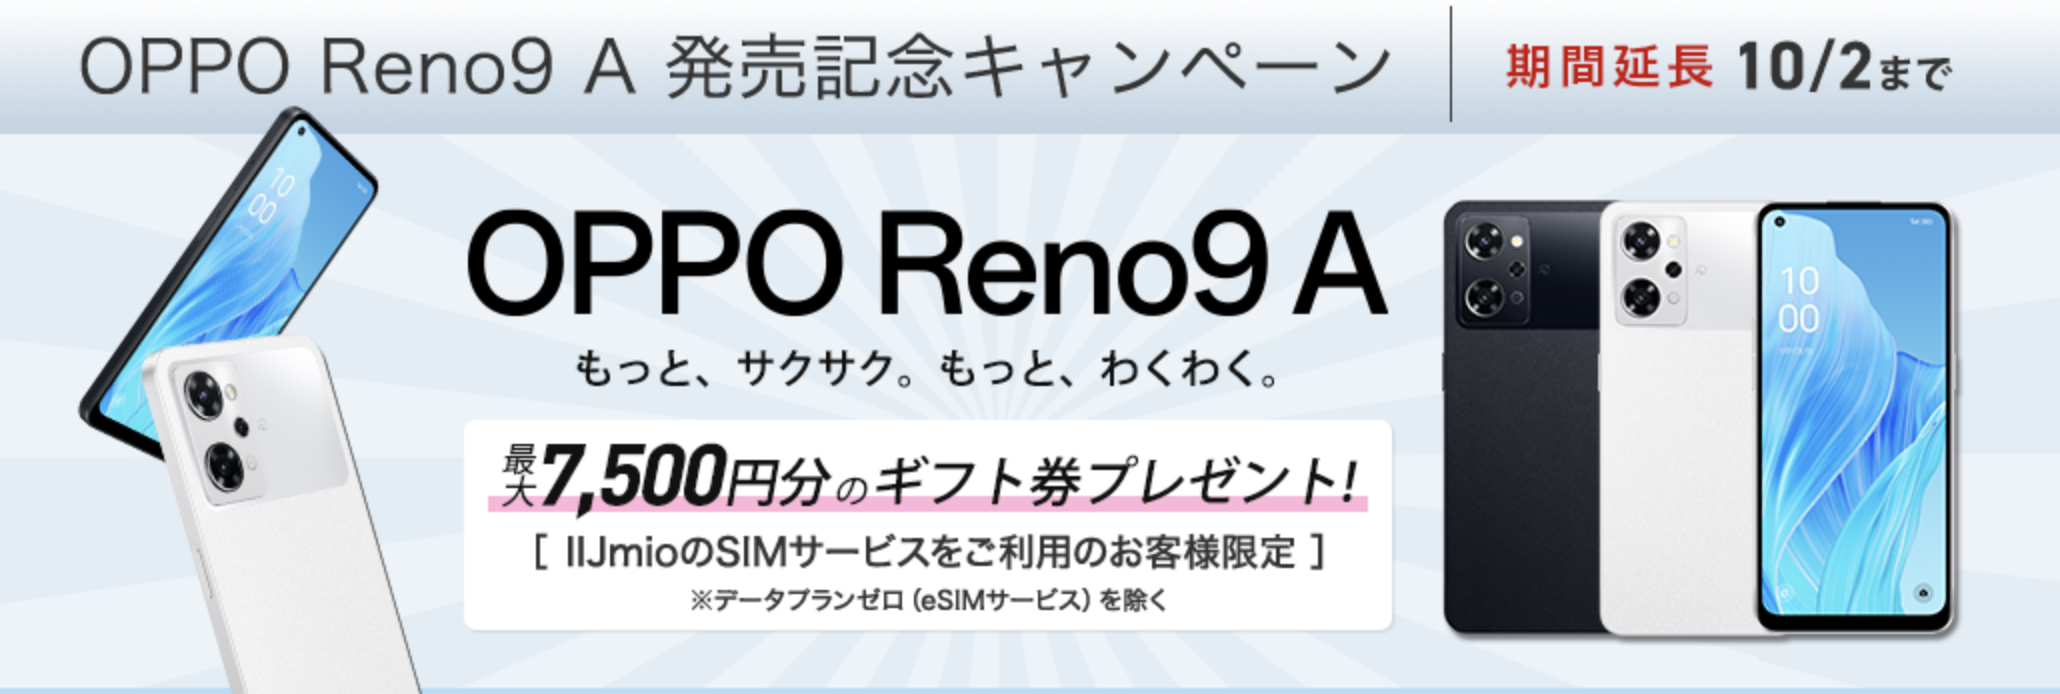 Reno9 A 発売記念キャンペーン